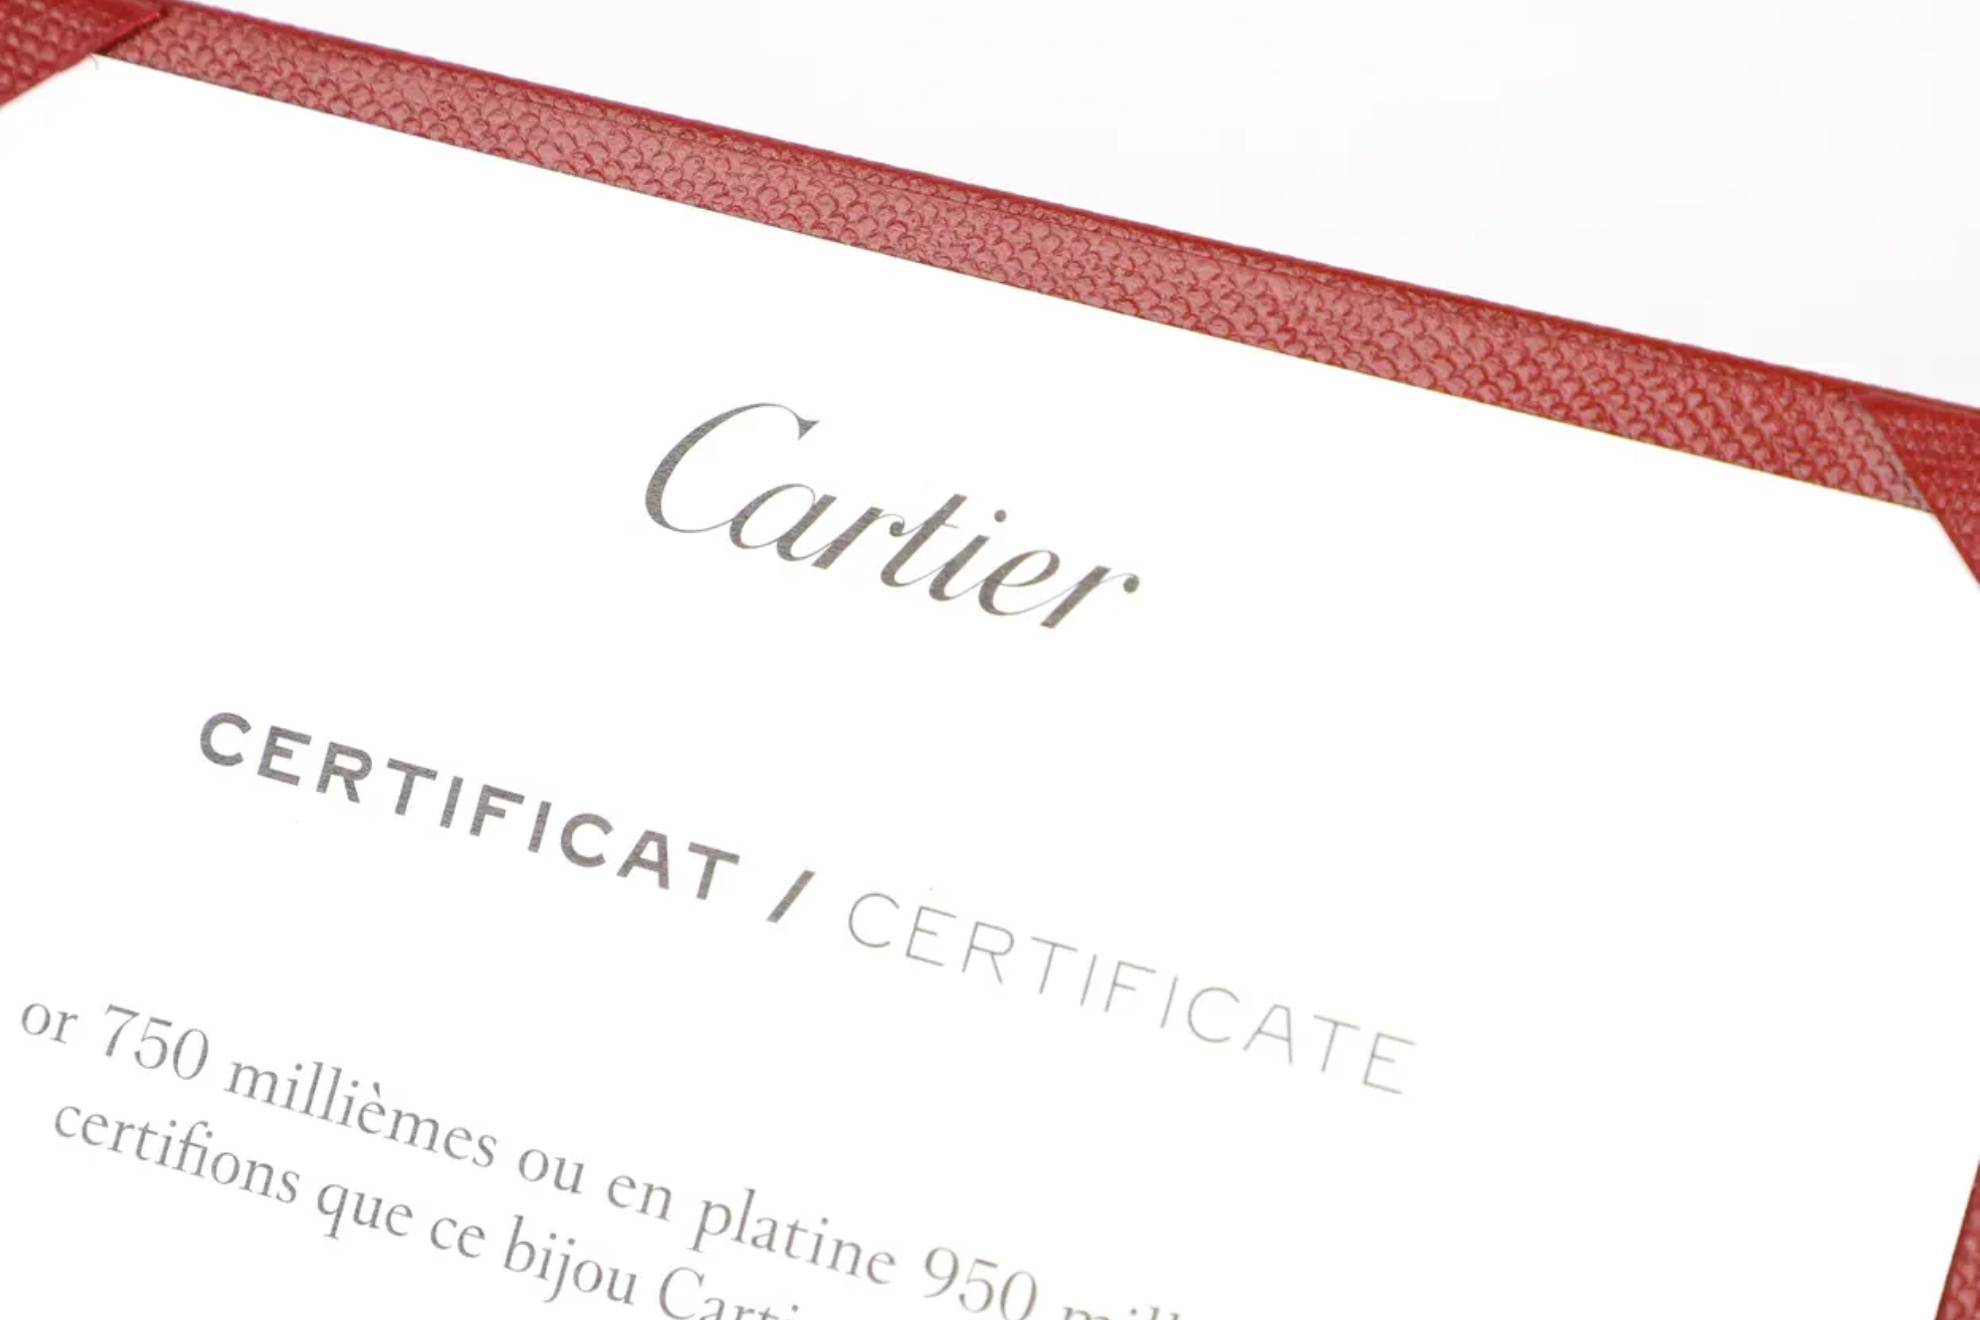 Cartier.